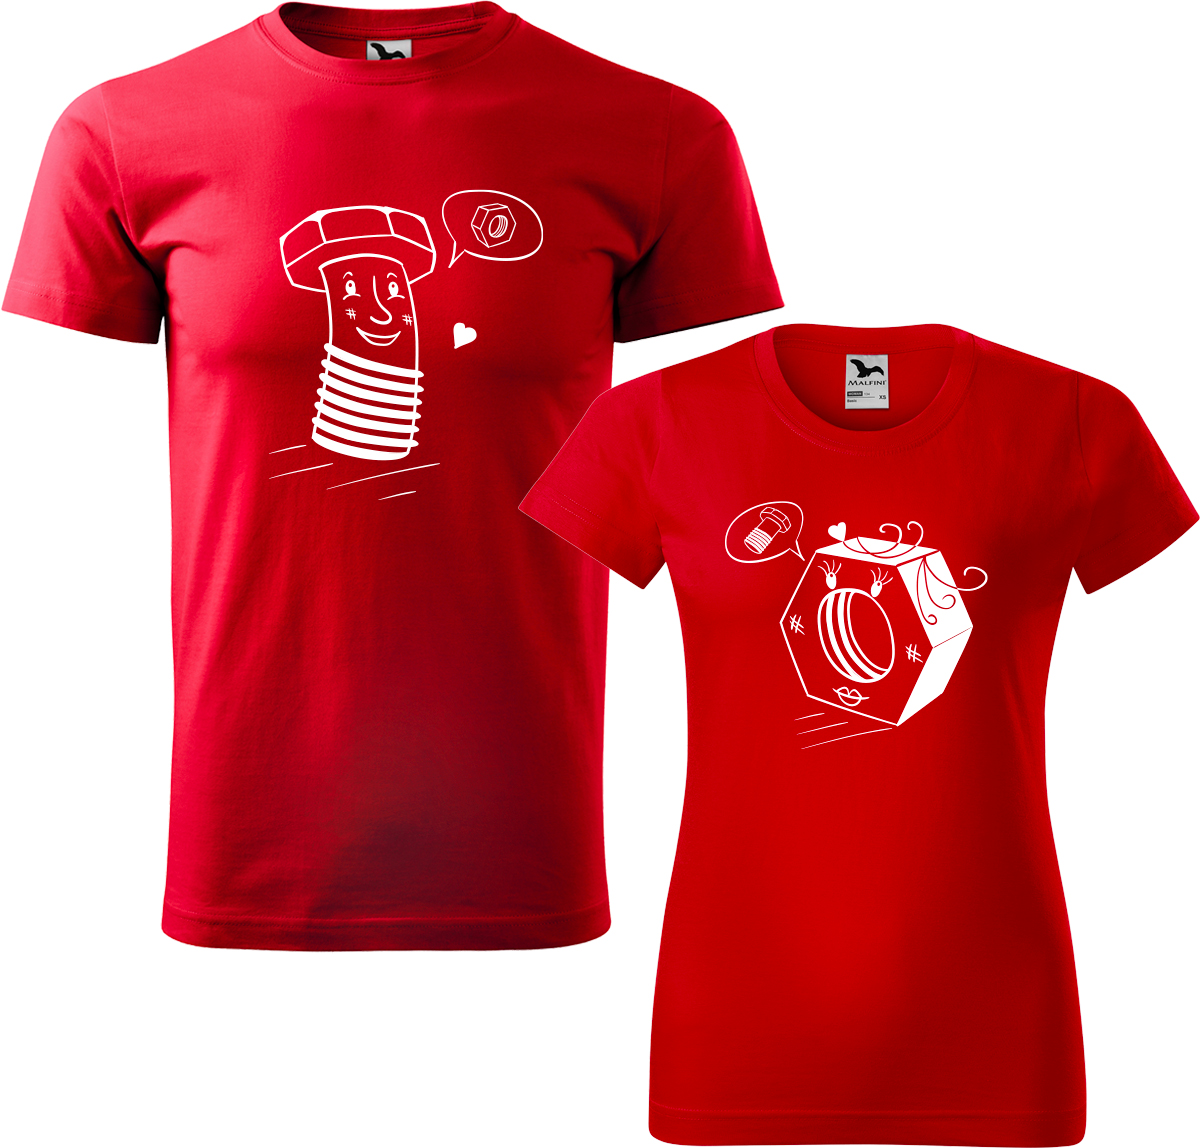 Trička pro páry - Šroubek a matička Barva: Červená (07), Velikost dámské tričko: S, Velikost pánské tričko: 3XL